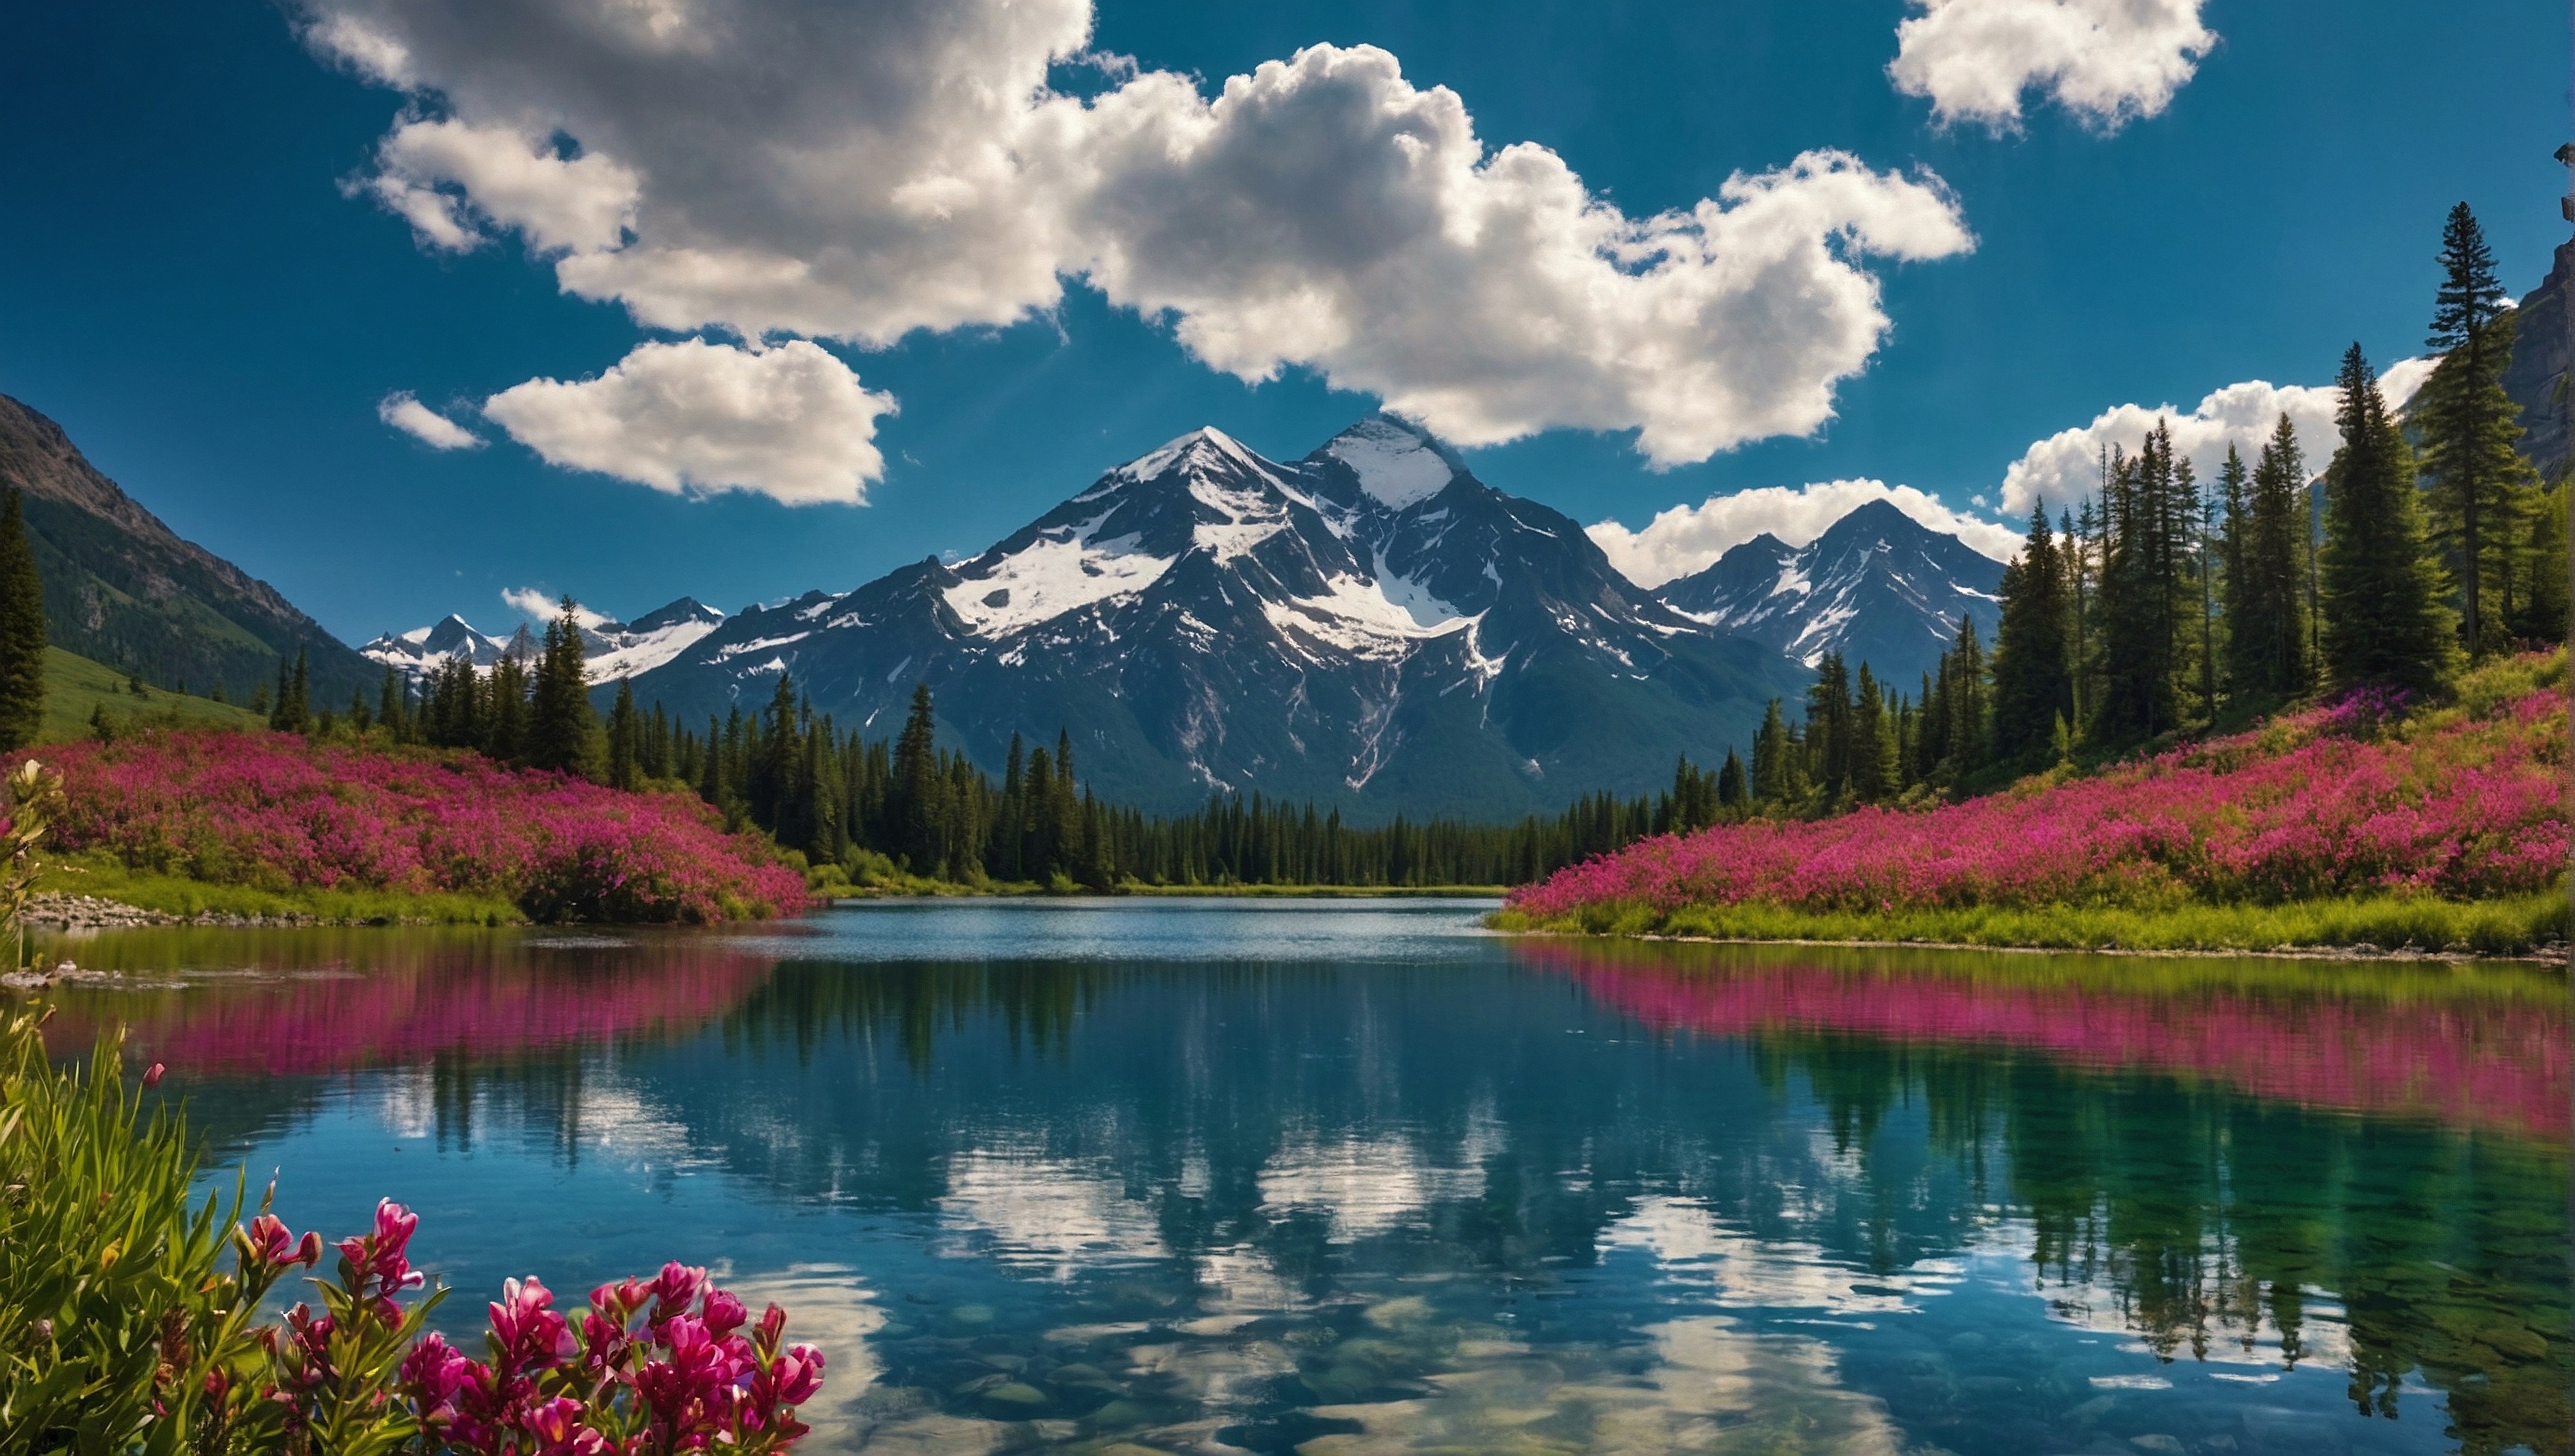 Бесплатное фото Красивая сцена с цветами и заснеженными горами